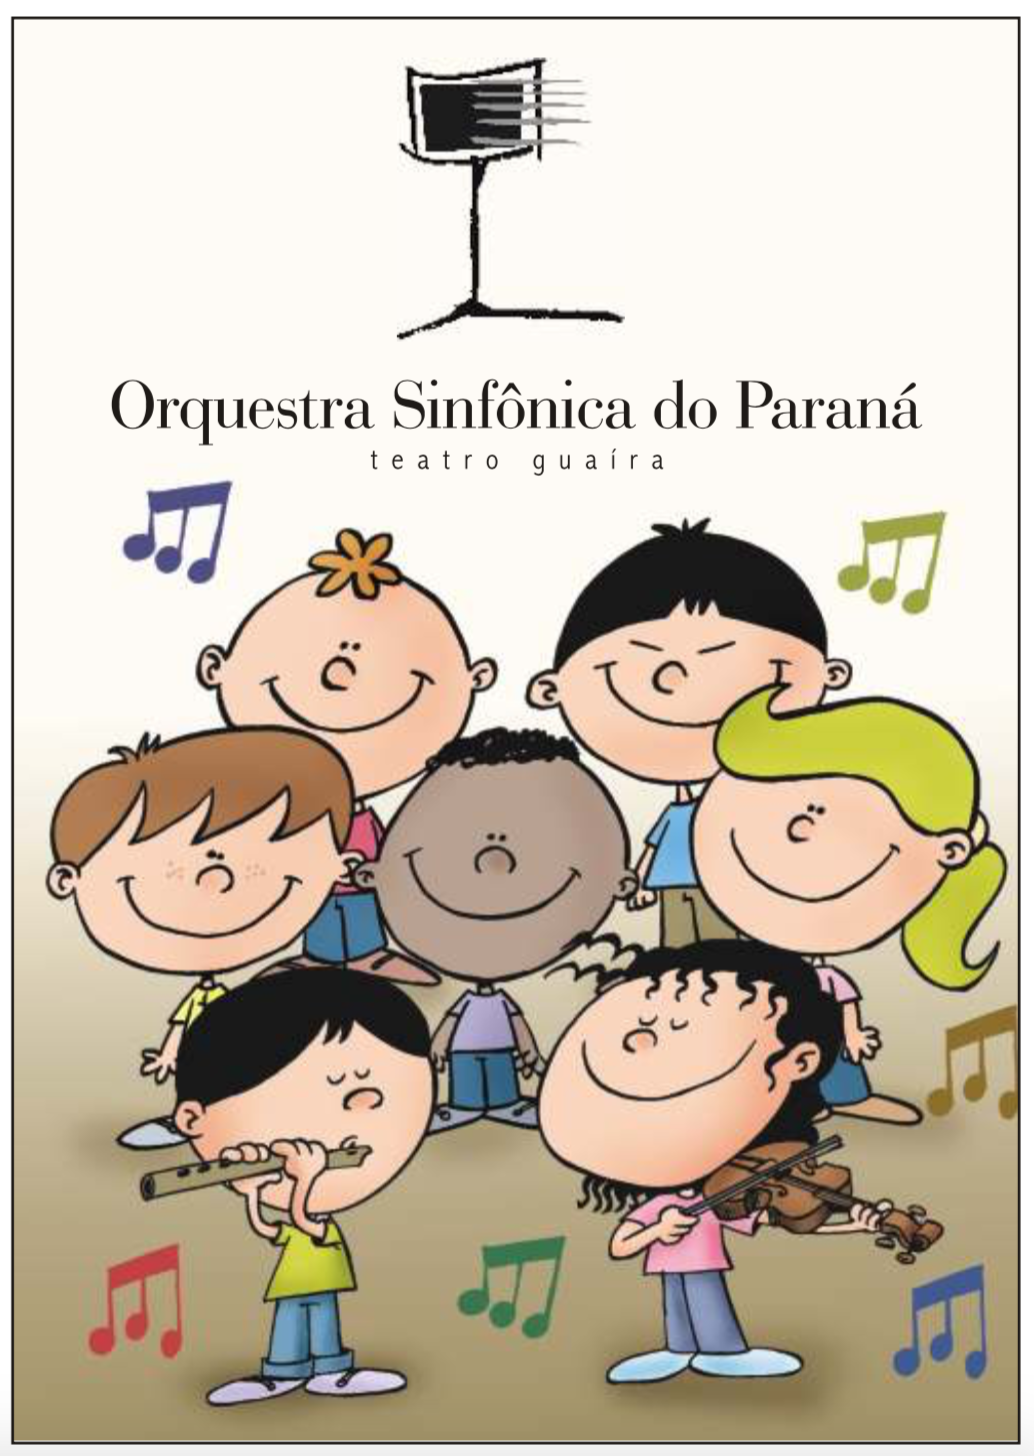 Ilustração infantil com sete crianças. Um menino toca flauta, uma menina toca o violino e as demais os assistem em segundo plano